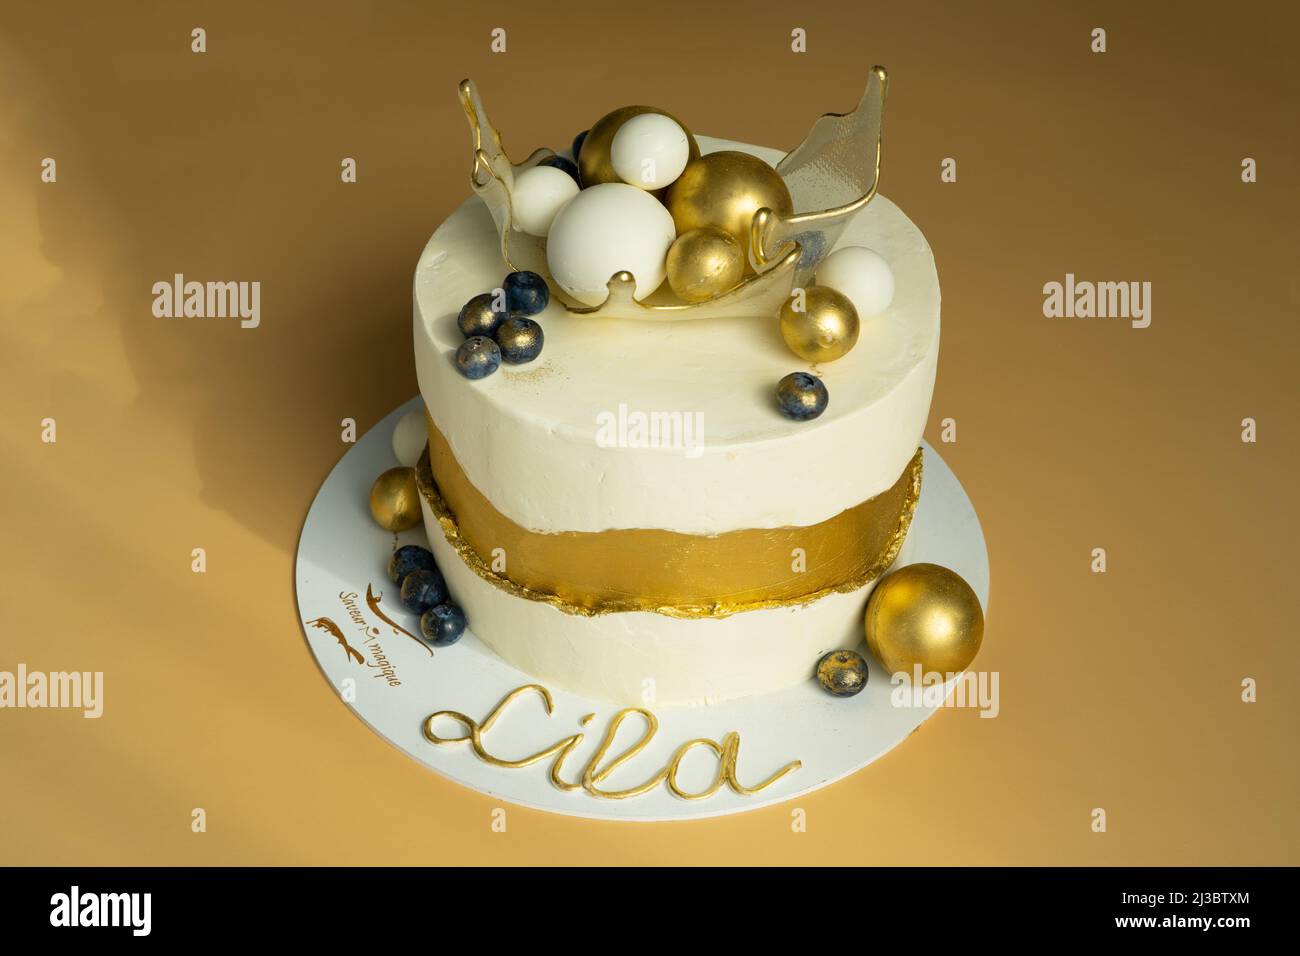 Eine schöne Geburtstagstorte, verziert mit Gold und Weiß mit Kugeln in einem karamellisierten transparenten Korb auf der Oberseite. Das Konzept der festlichen Desserts. Hochwertige Fotos Stockfoto